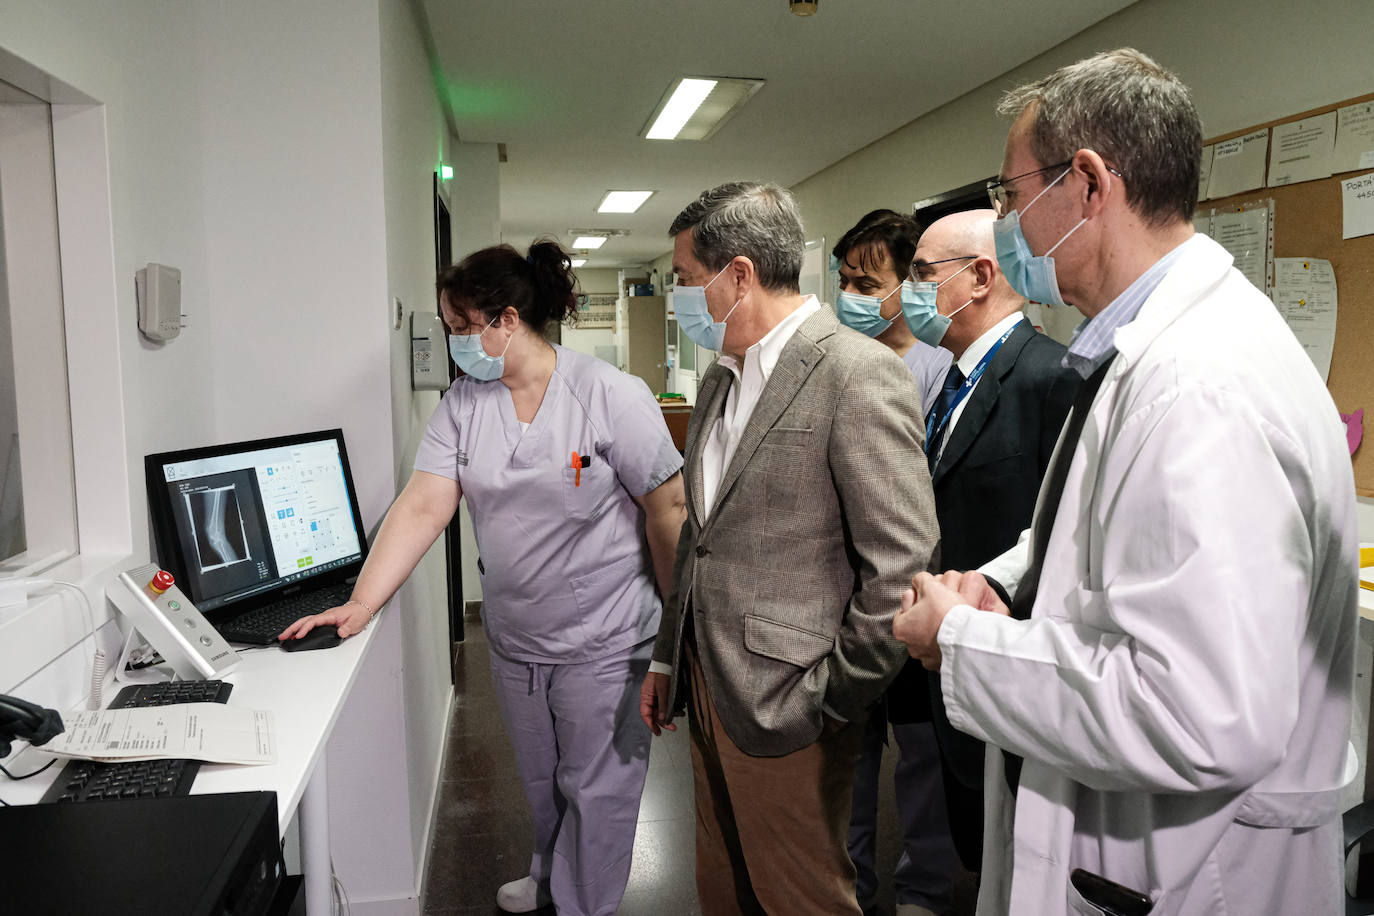 Imagen secundaria 1 - Imágeees de la visita del conseller Gómez al Hospital General de Alicante este jueves.